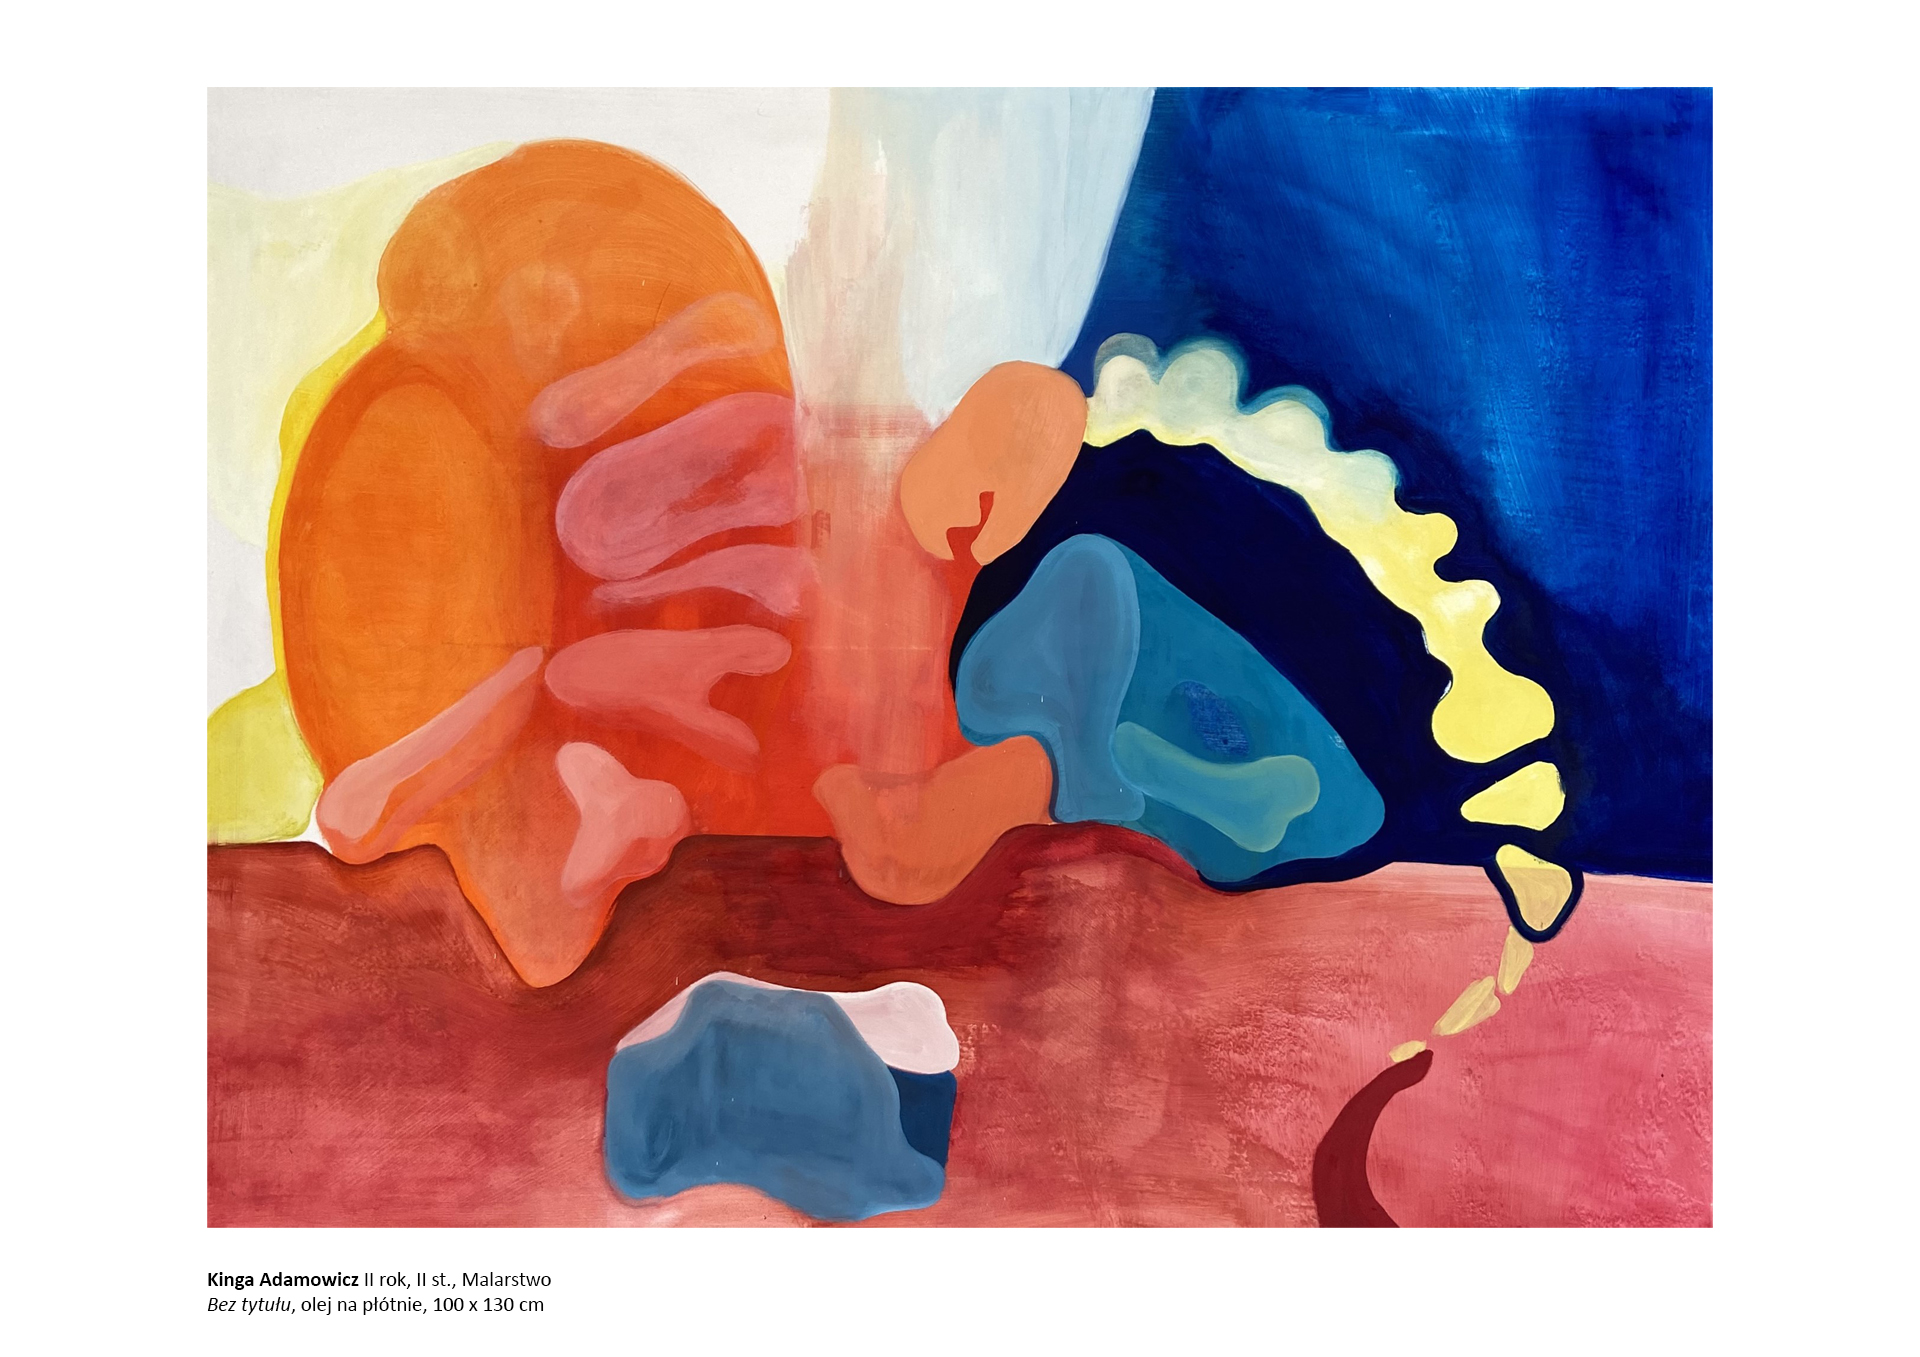 Kinga Adamowicz, II rok, I st., Malarstwo, obraz olejny na płótnie.